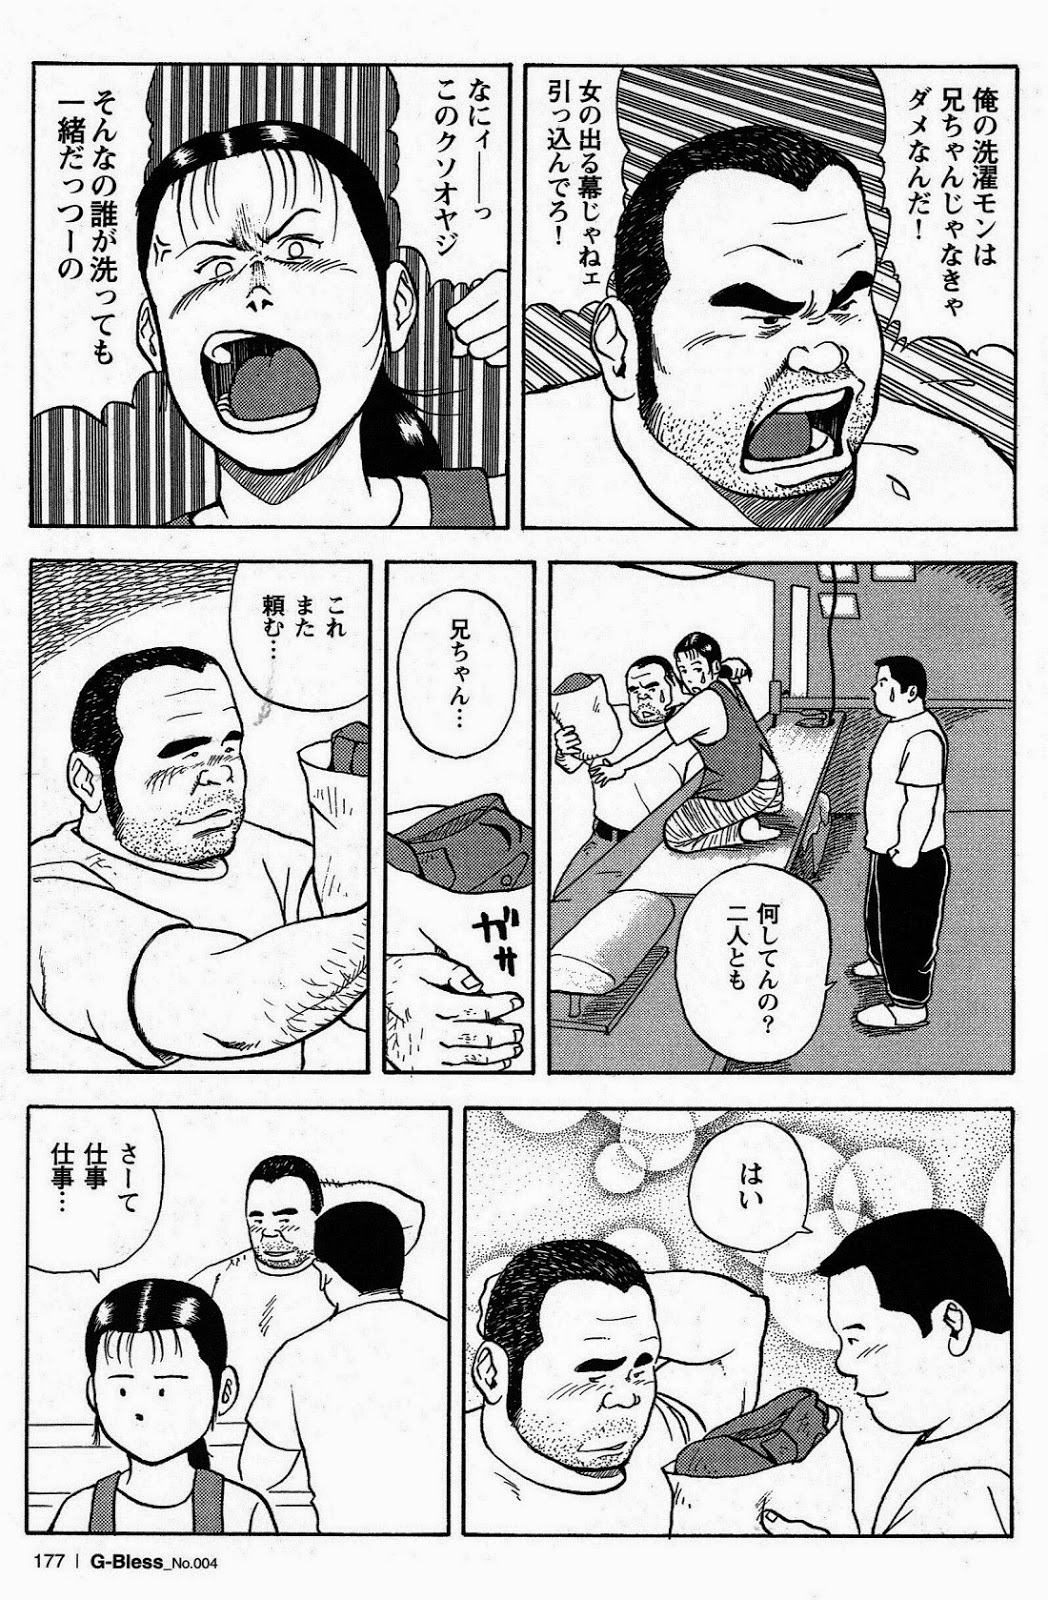 [Tatsumi Daigo, Yoshihiko Takeo] Sentakuya Bugi (GBless Vol.04) page 7 full